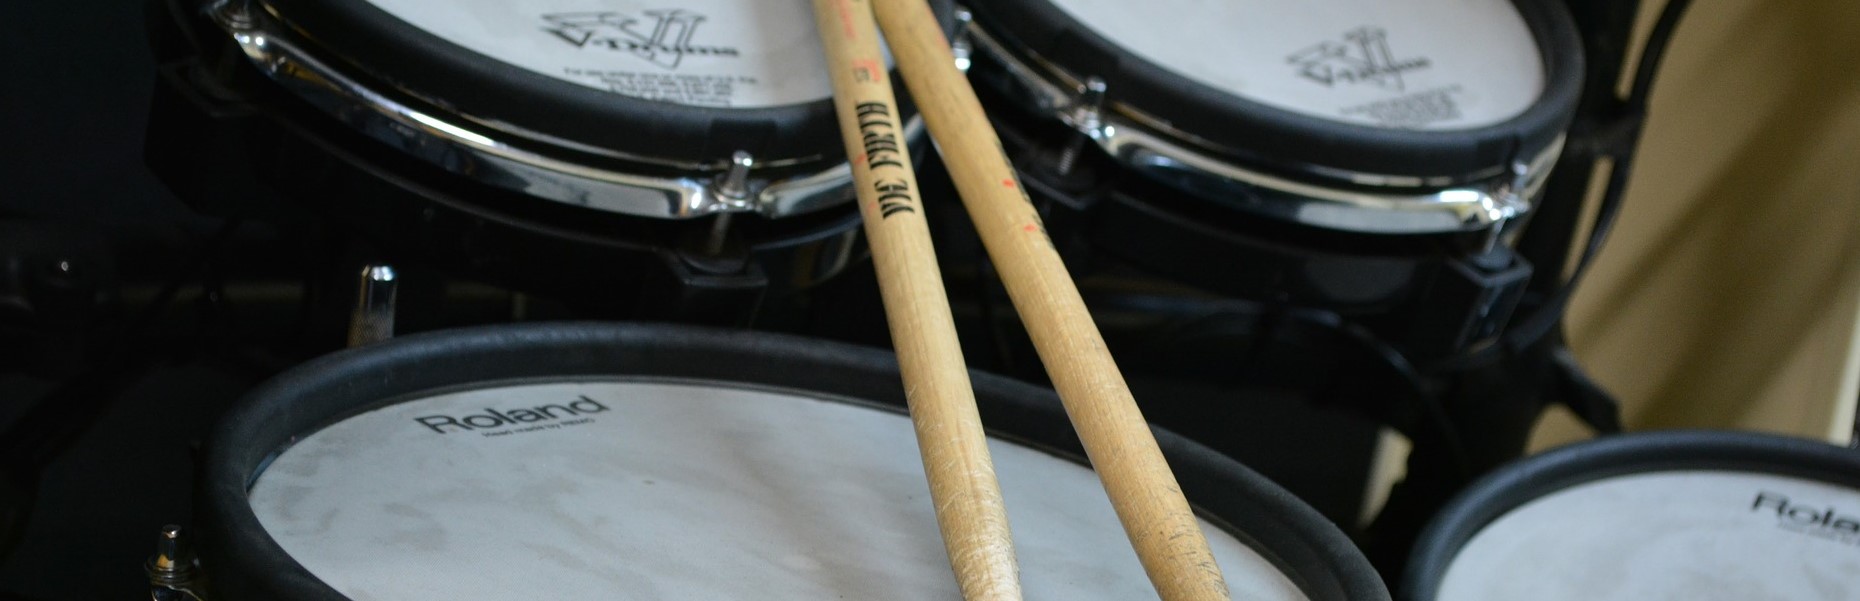 E-Drums mit Sticks